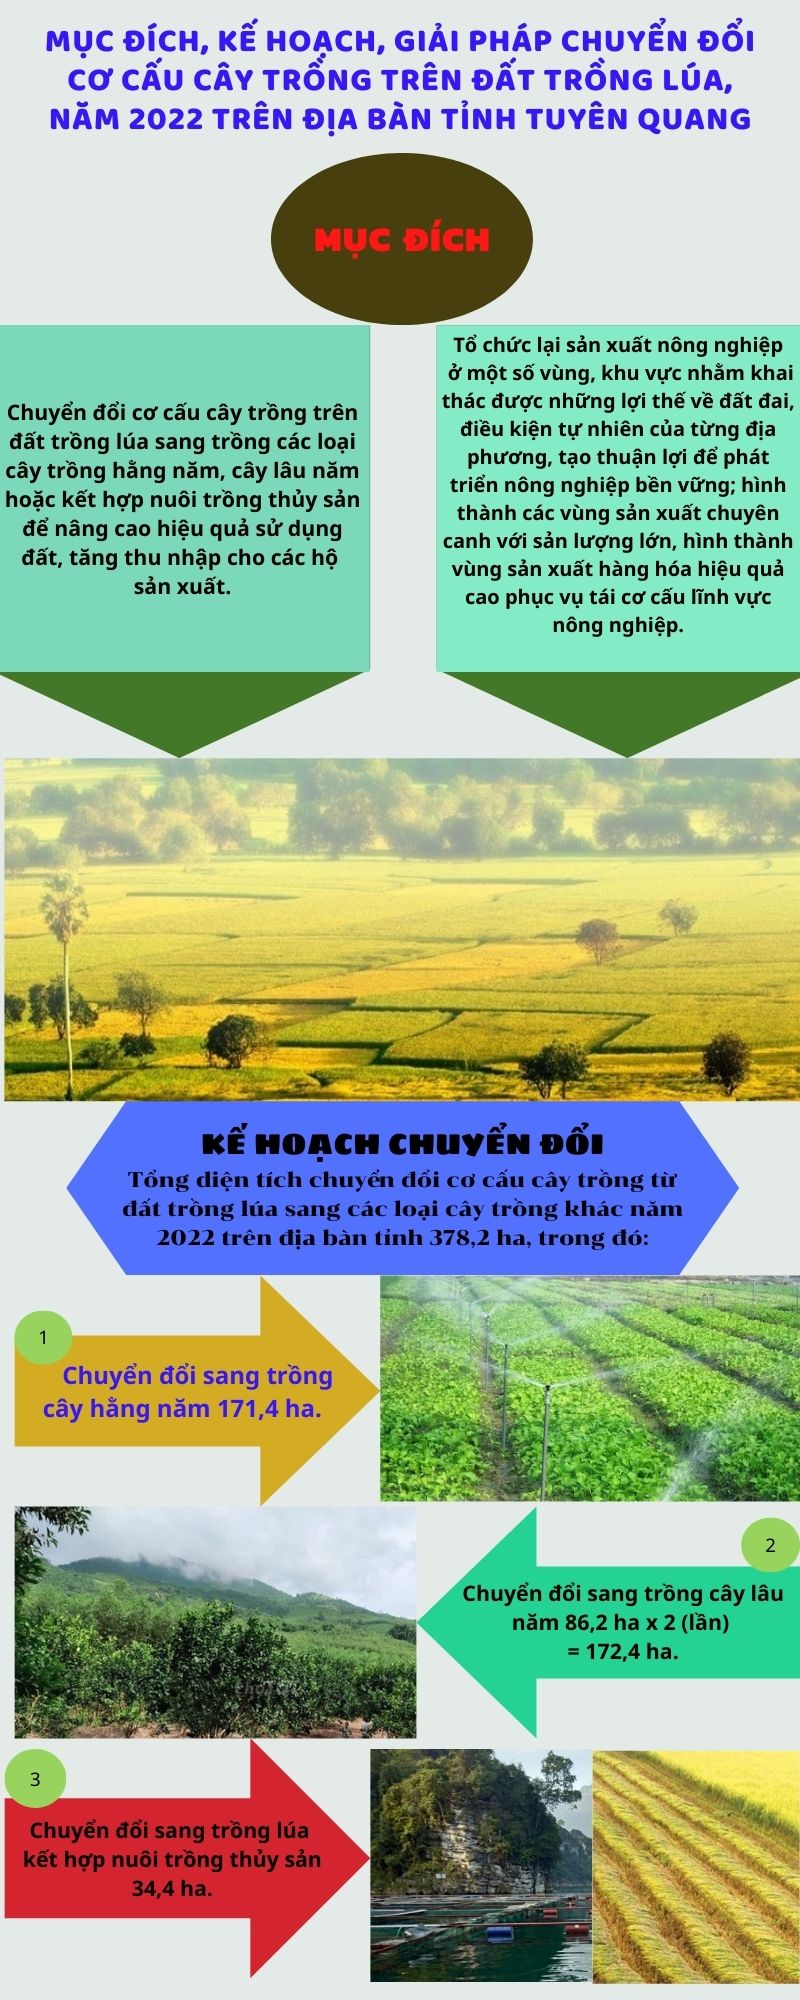 Mục đích, kế hoạch, giải pháp Kế hoạch số 109/KH-UBND  về chuyển đổi cơ cấu cây trồng trên đất trồng lúa, năm 2022 trên địa bàn tỉnh Tuyên Quang